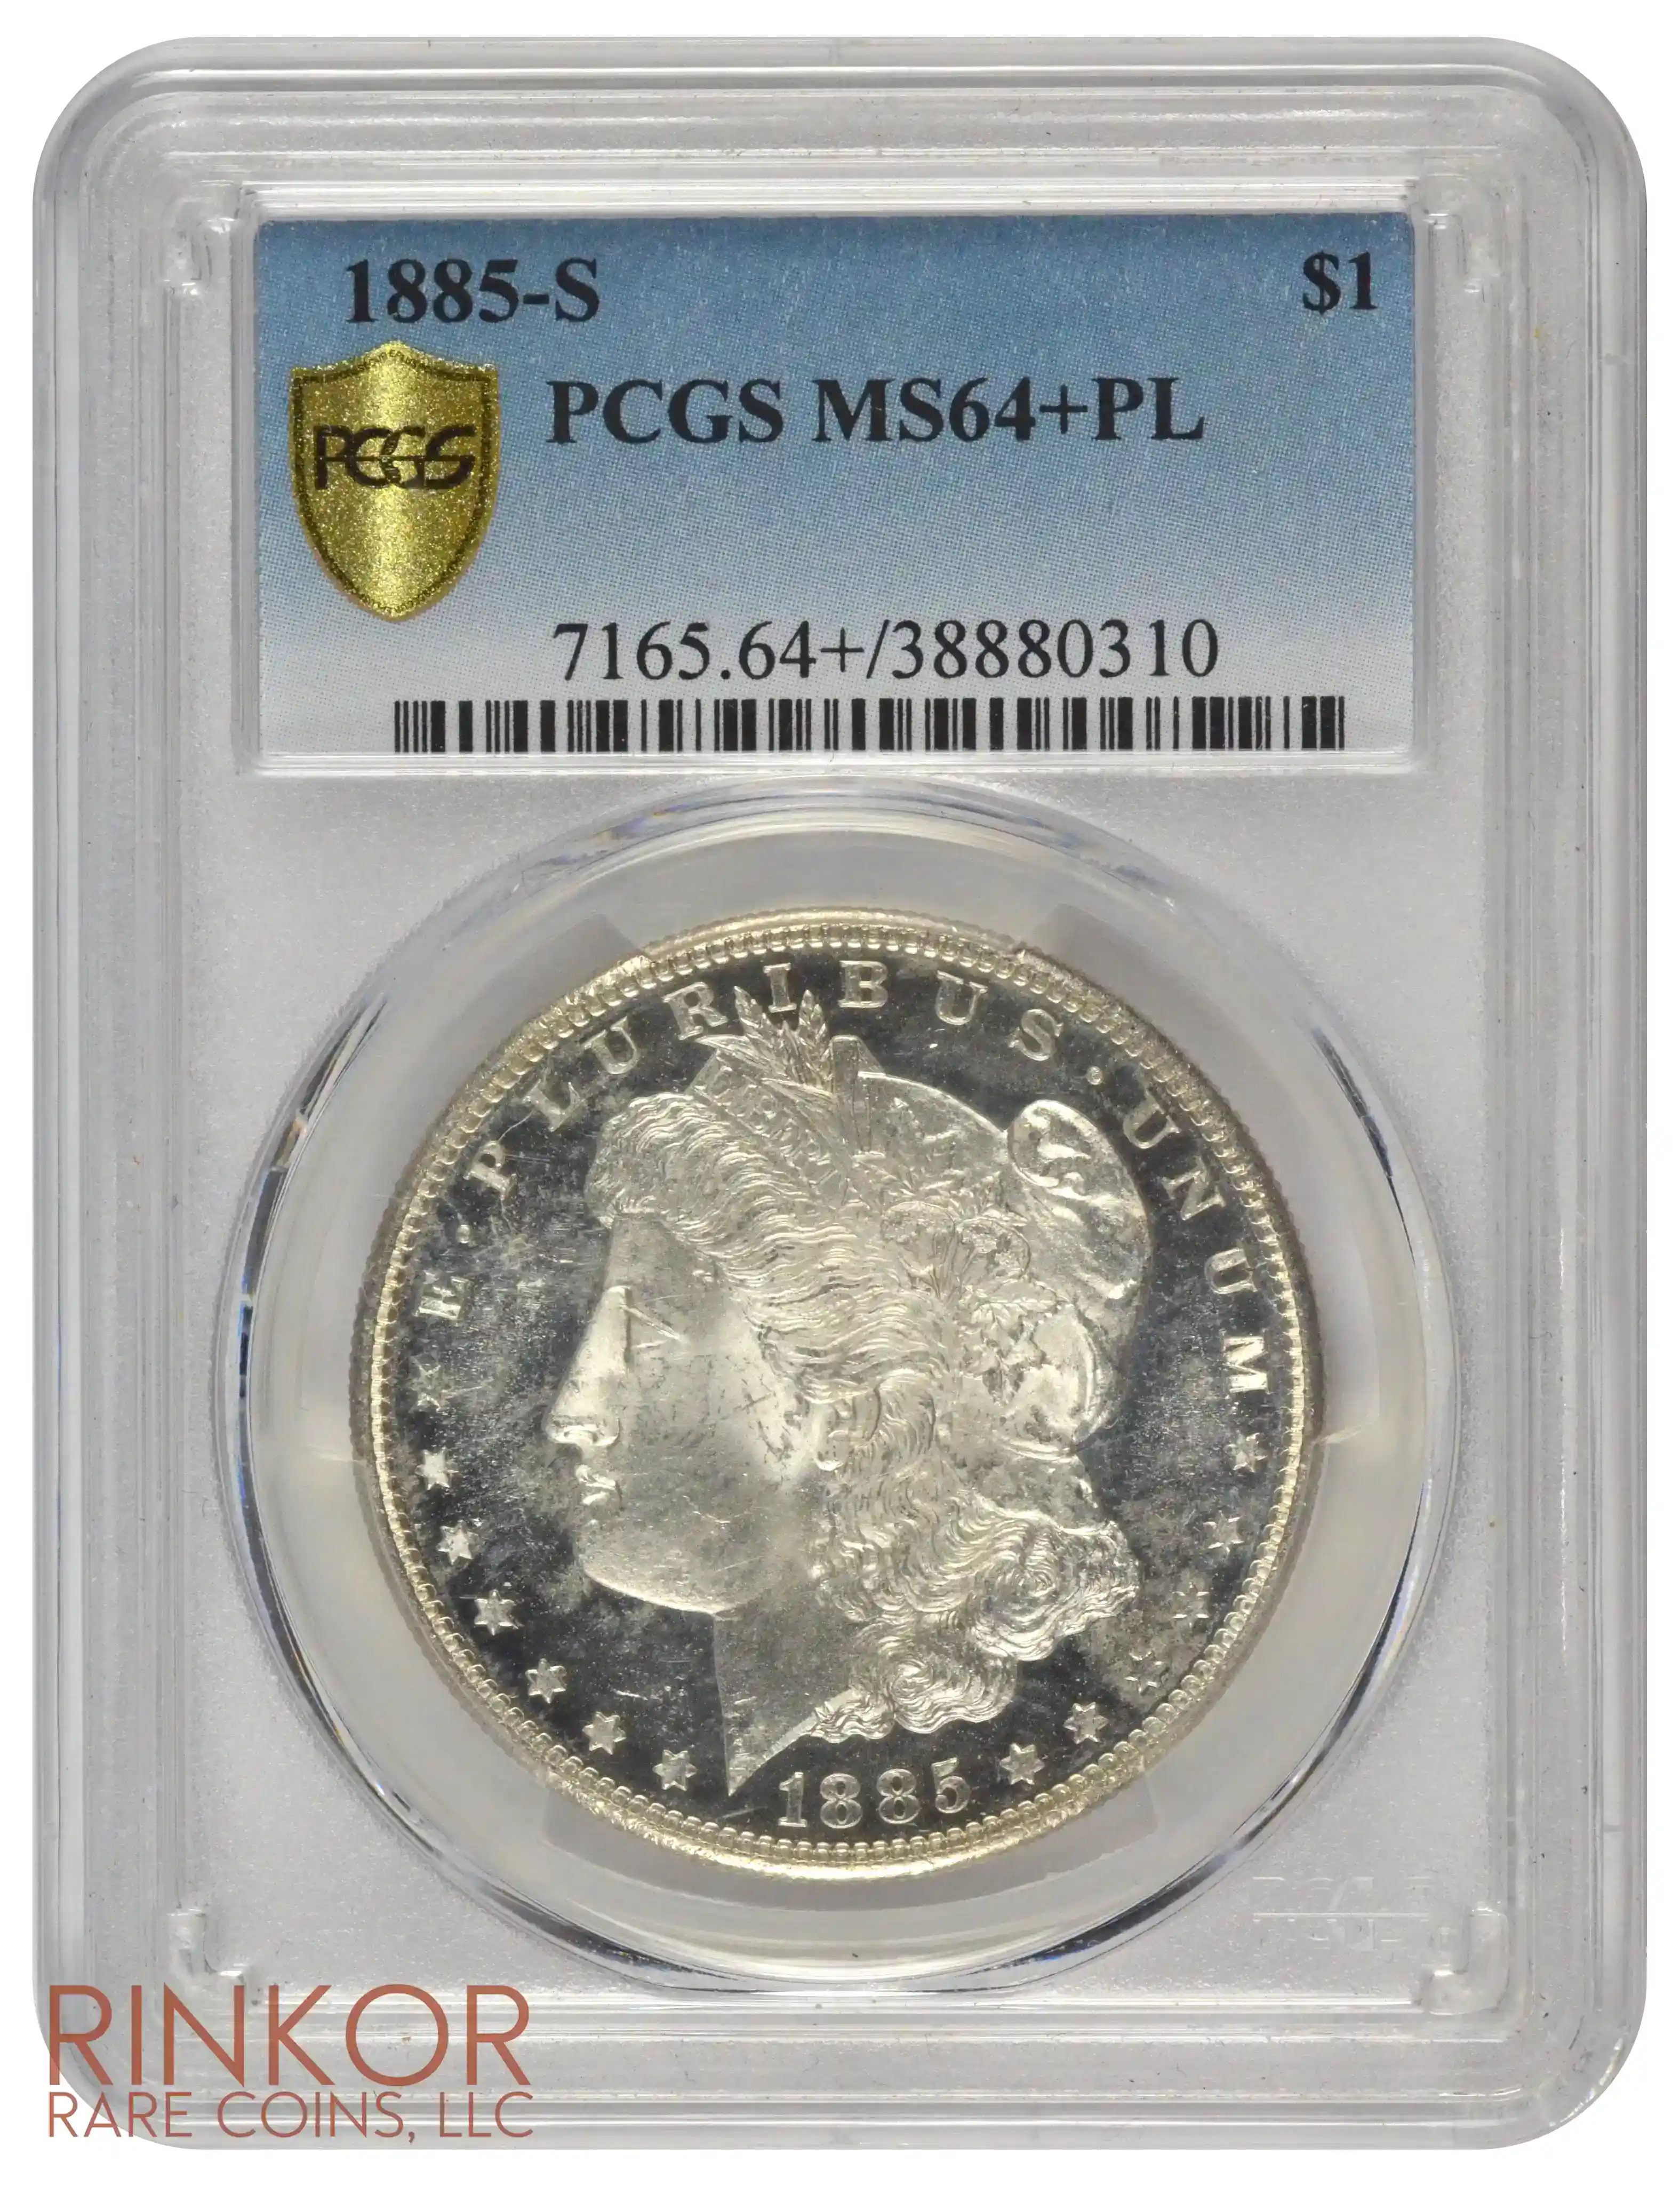 1885-S $1 PCGS MS 64+ PL